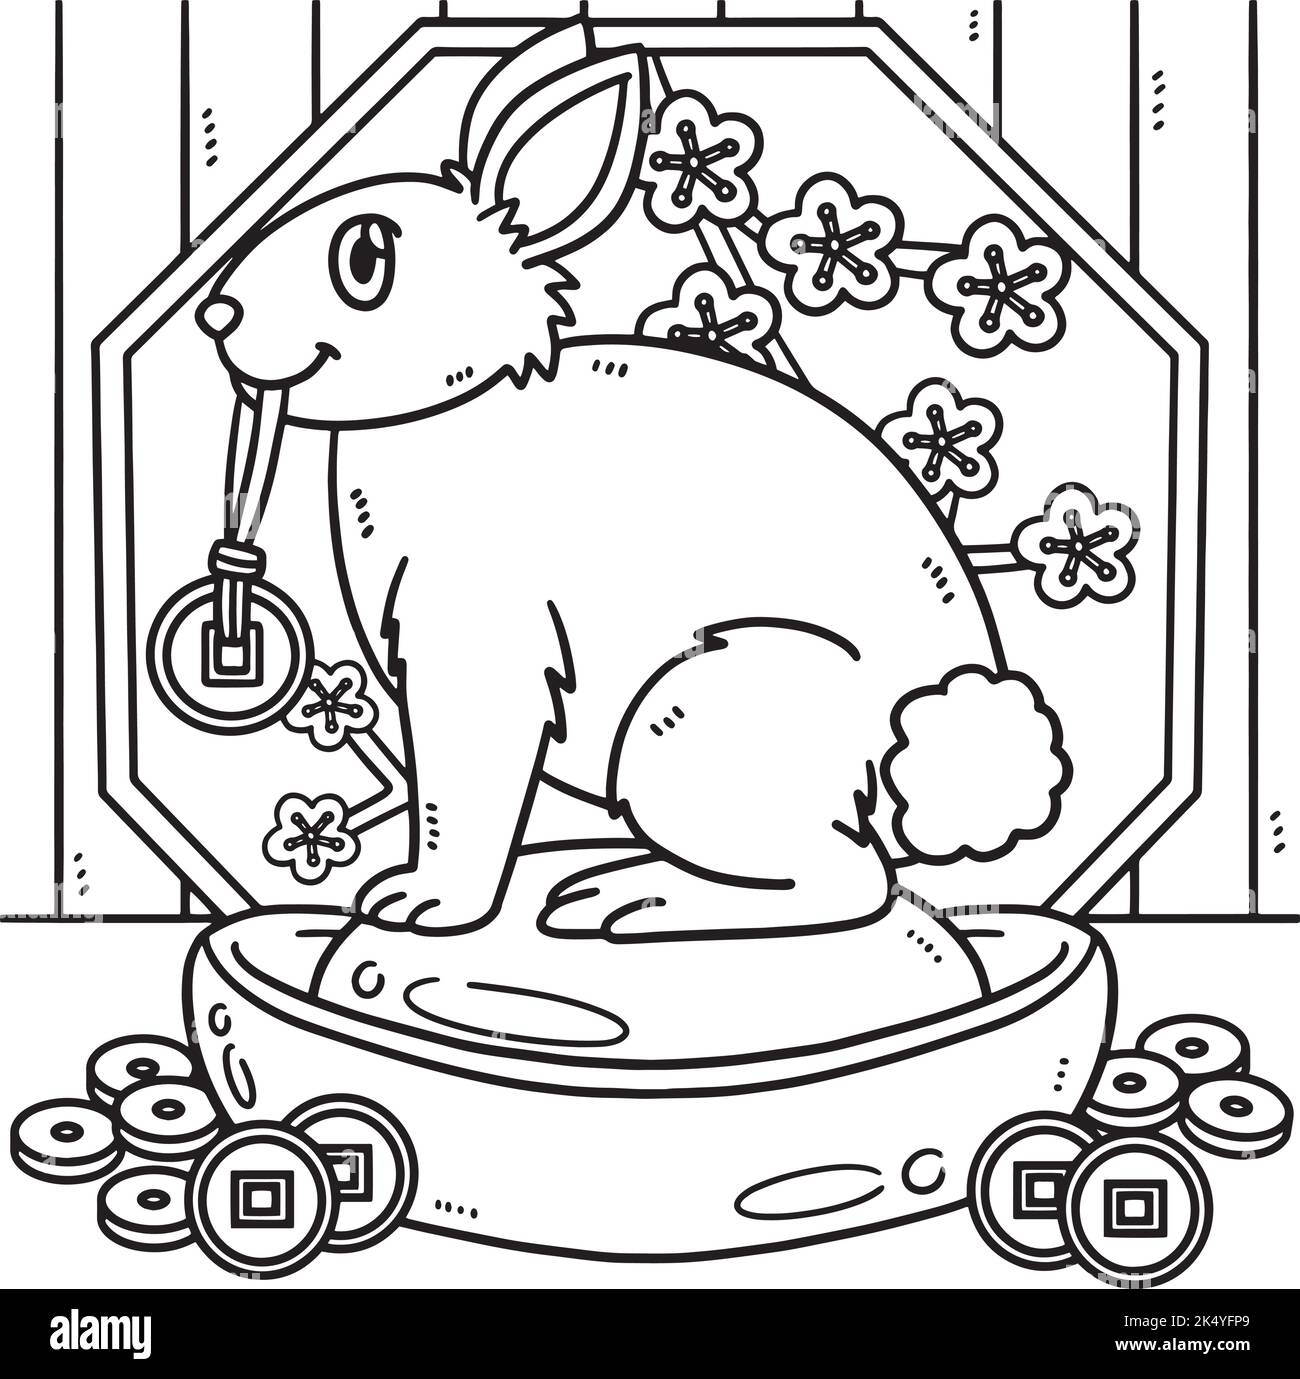 Lapin Charm Afficher l'année de la coloration de lapin Illustration de Vecteur